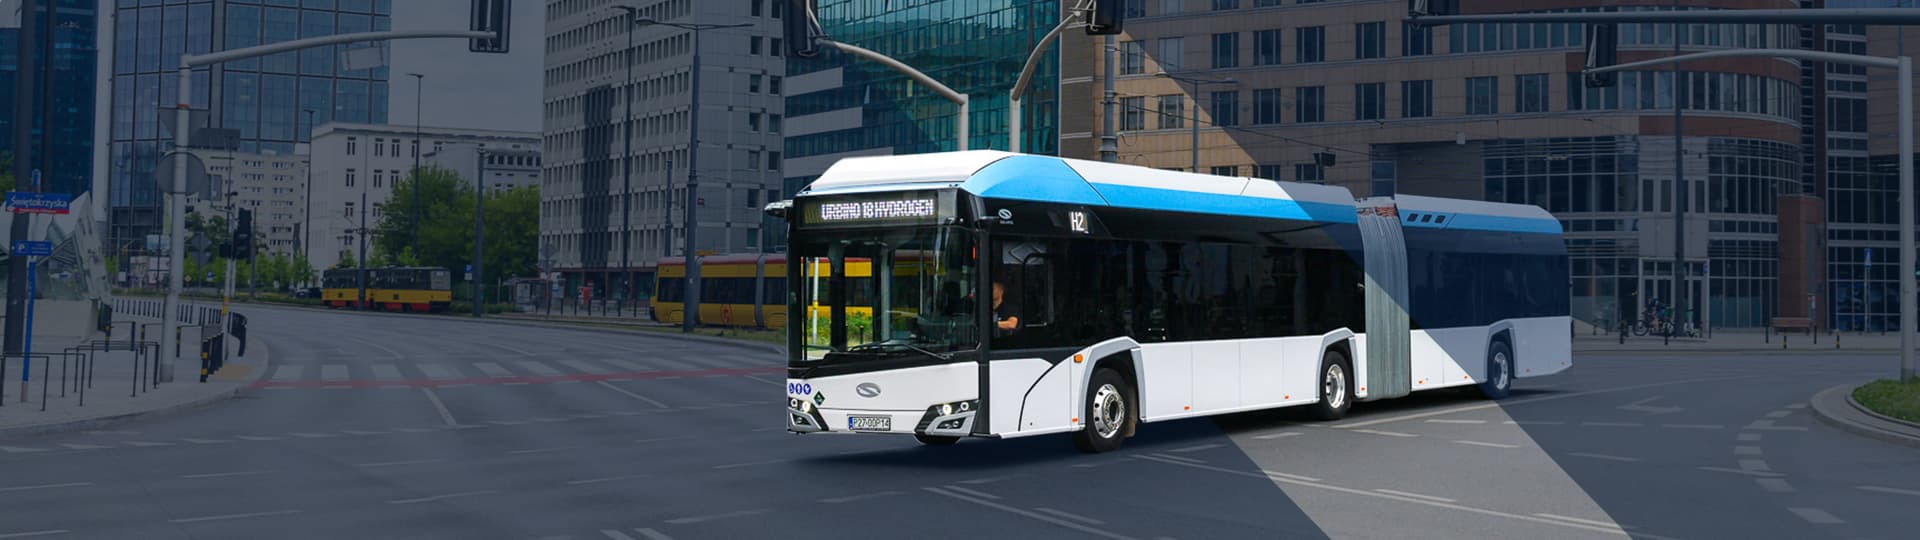 Solaris, del Grupo CAF, suministrará 50 autobuses eléctricos a Berlín y otros 50 a Madrid